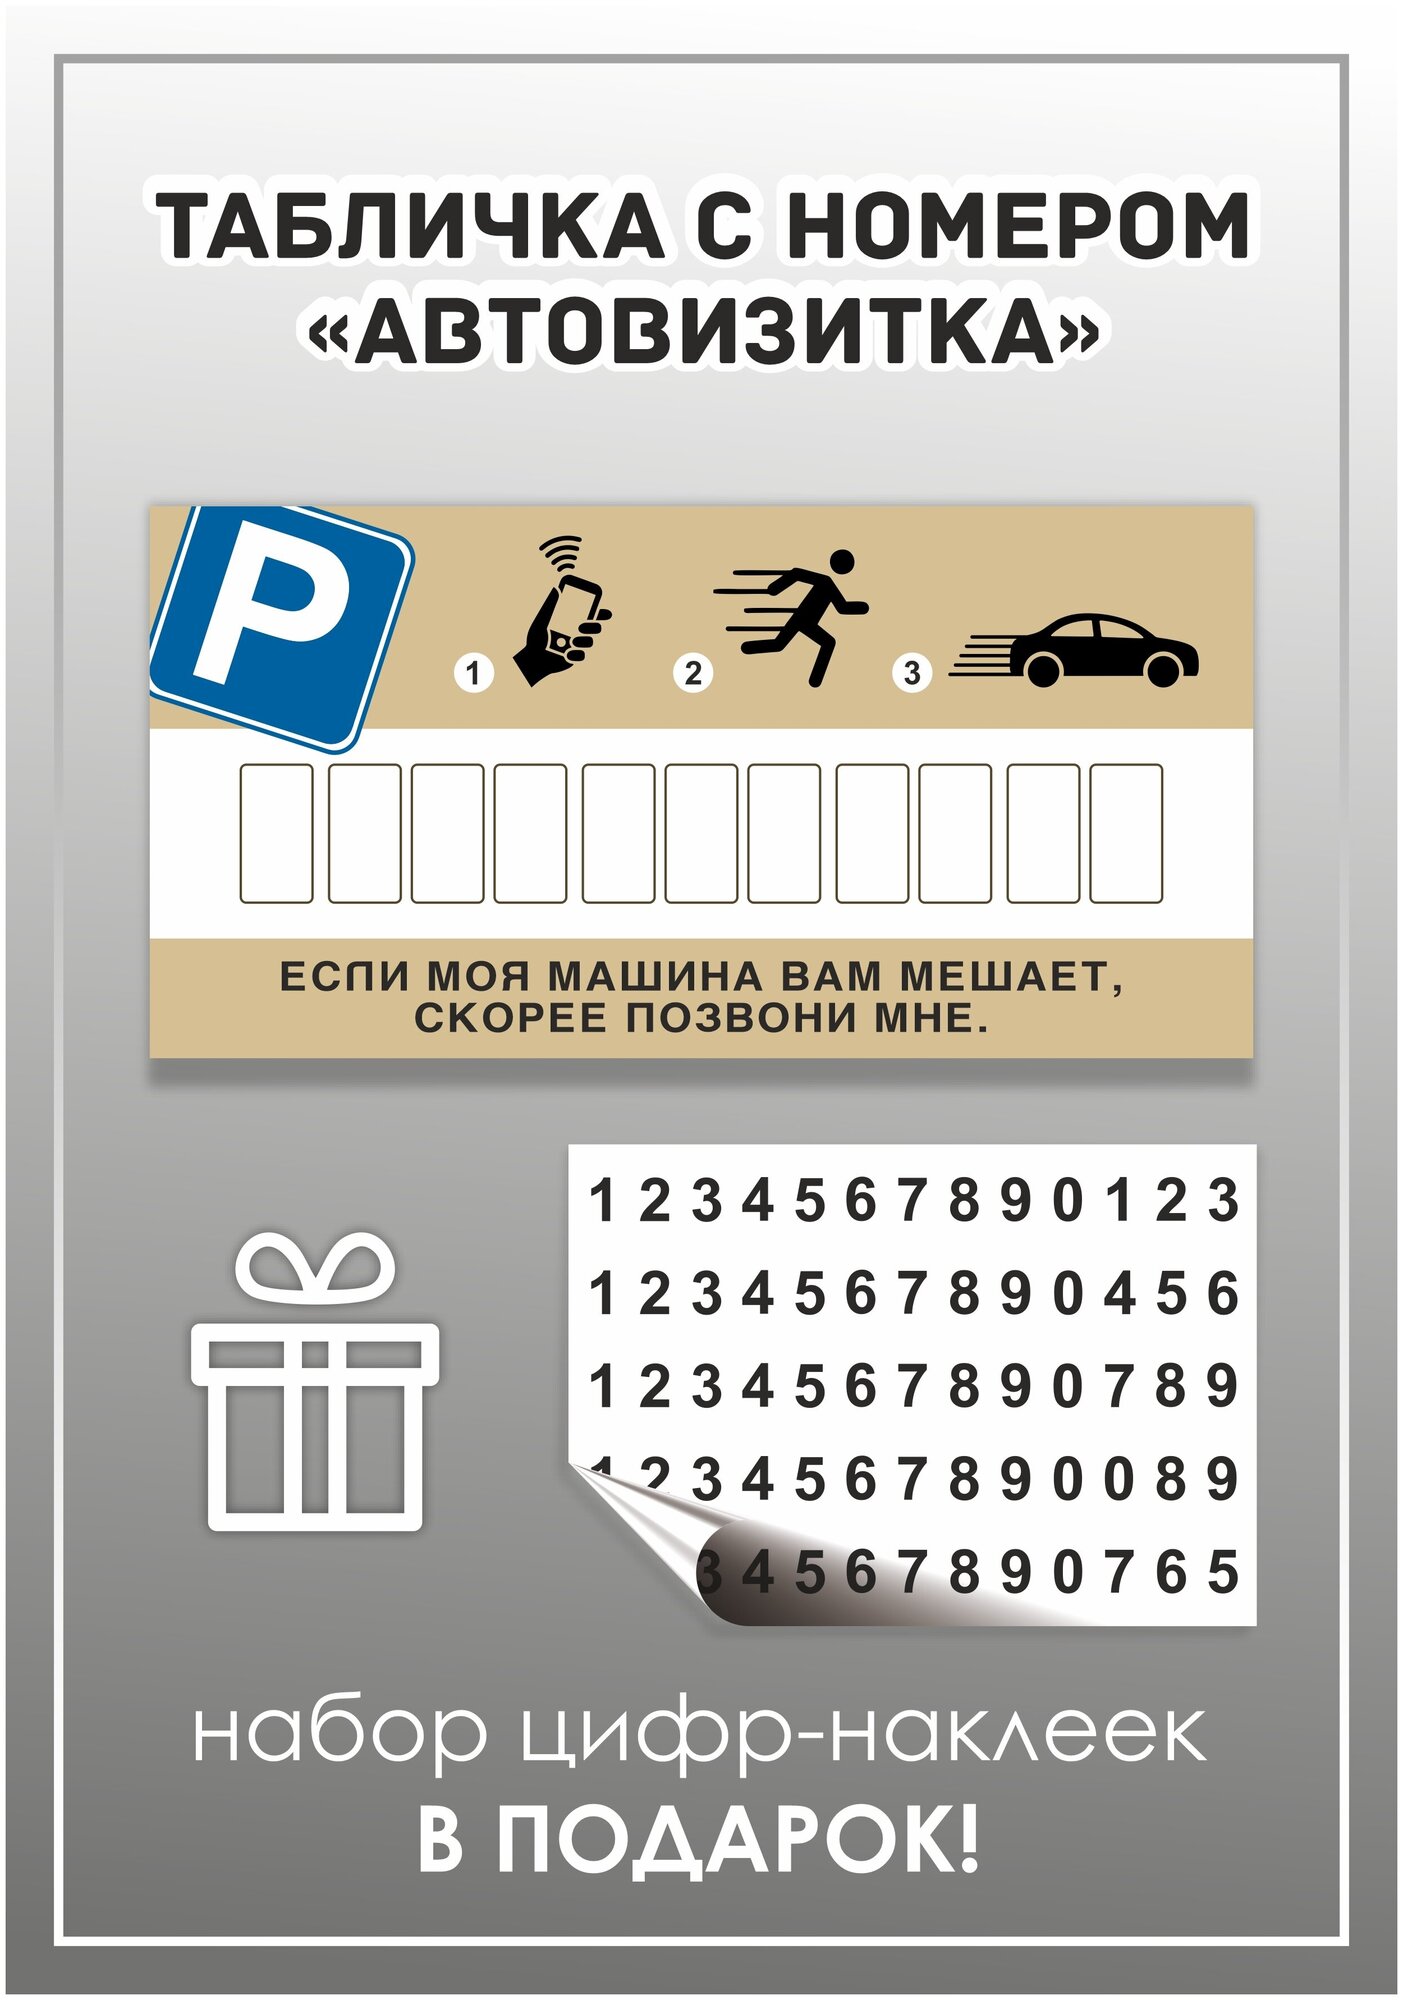 Табличка автовизитка парковочная для номера